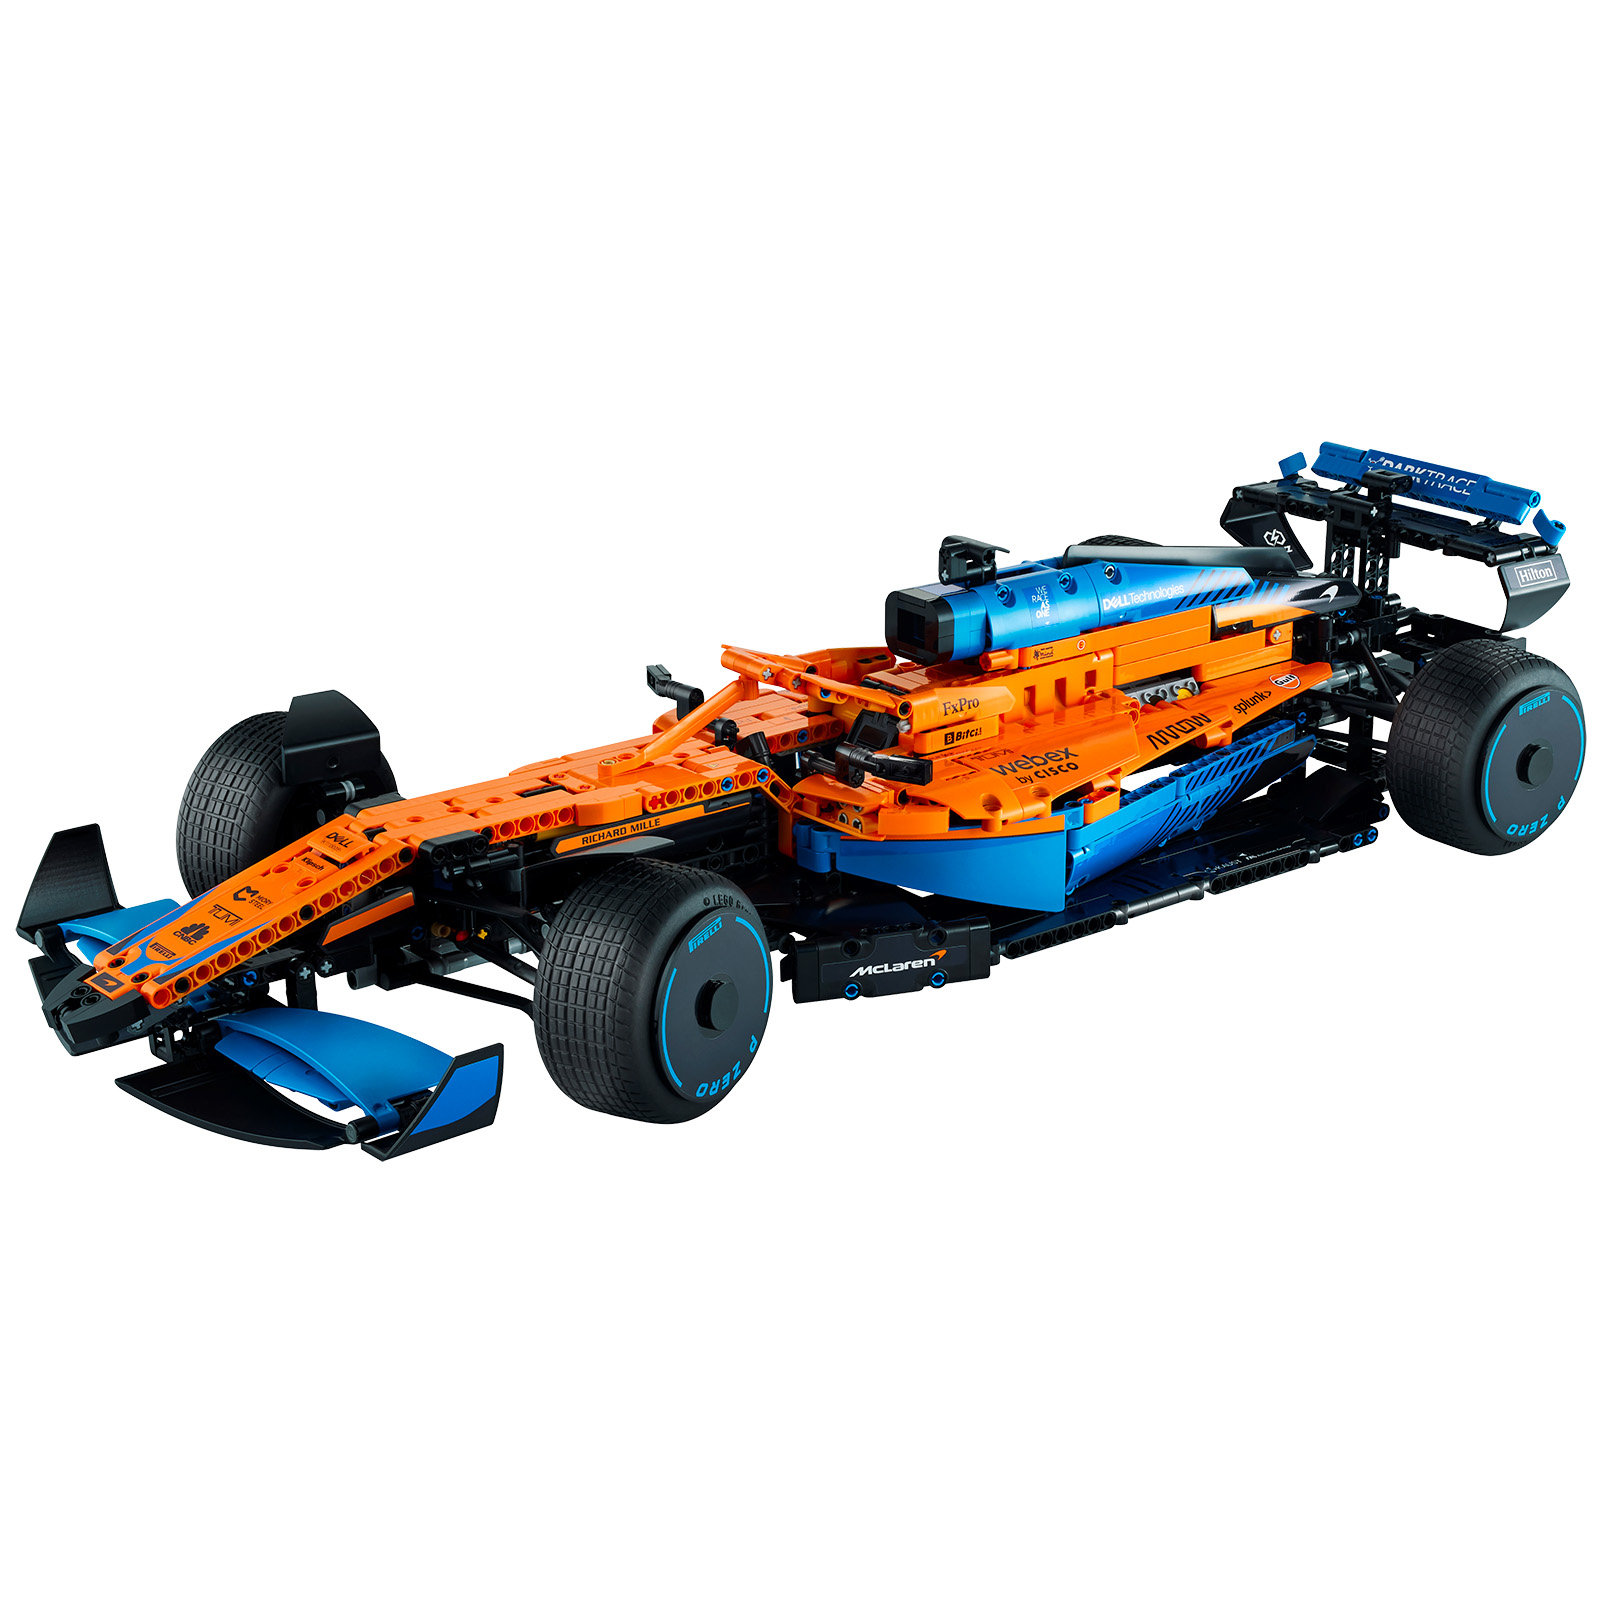 ▻ LEGO Technic 42141 McLaren Formula 1 Race Car the set is online on the Shop